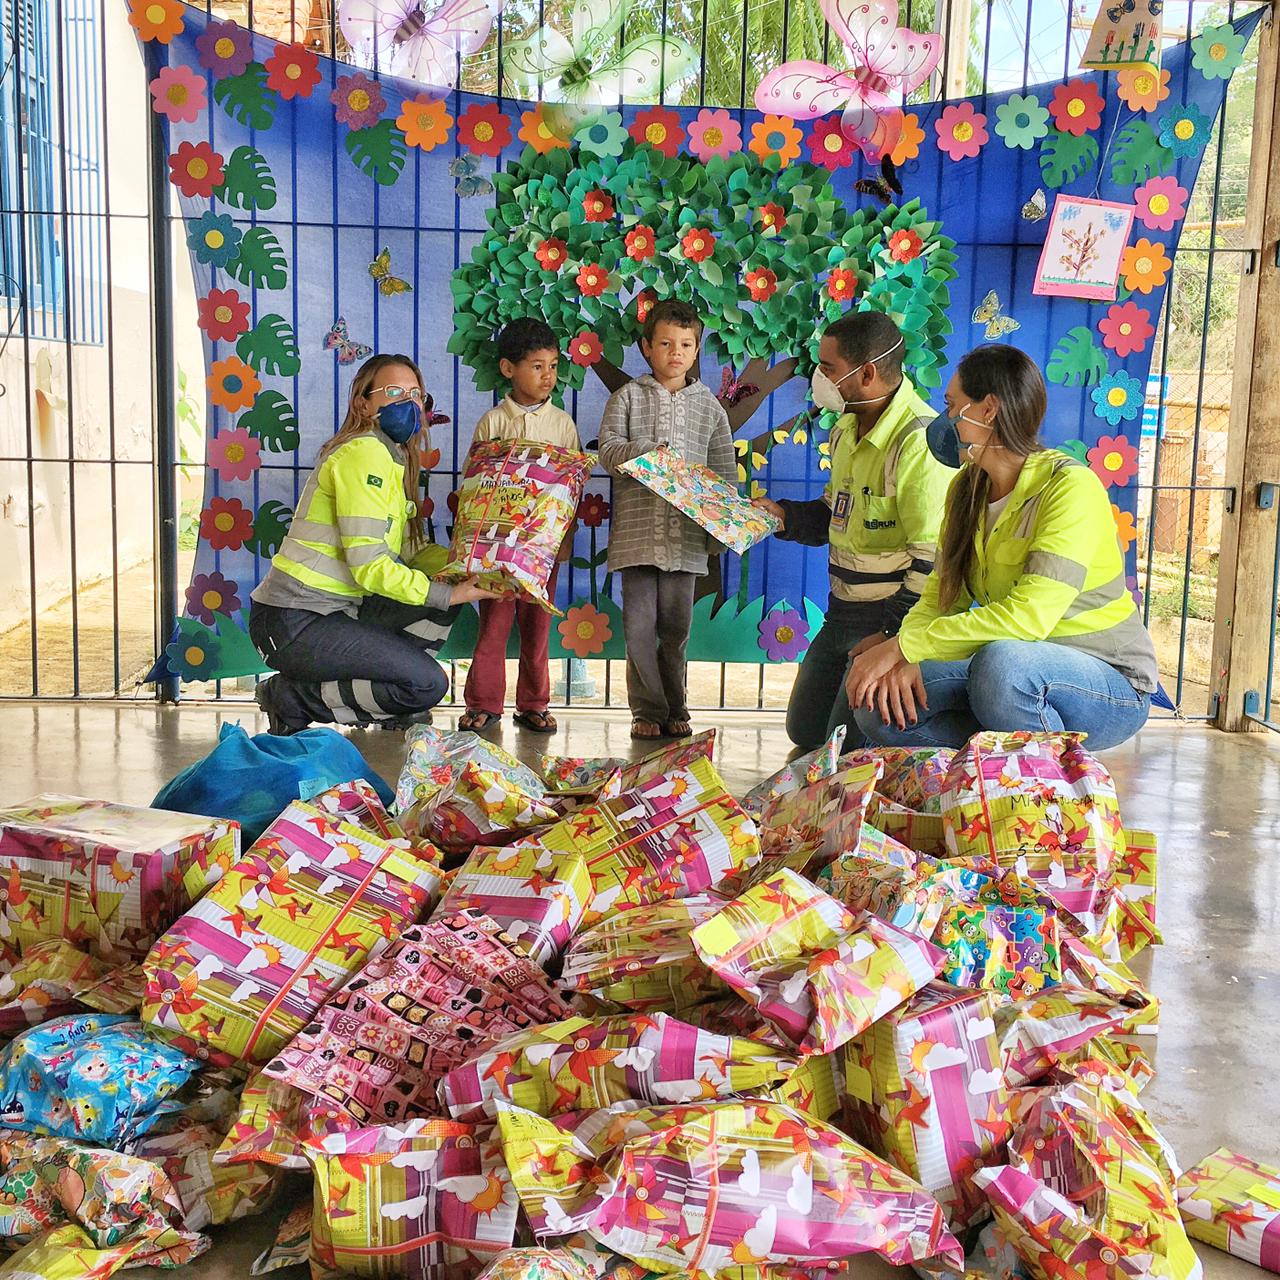 Instituto LafargeHolcim realiza ação junto a colaboradores e doa milhares de brinquedos em oito municípios onde a empresa opera